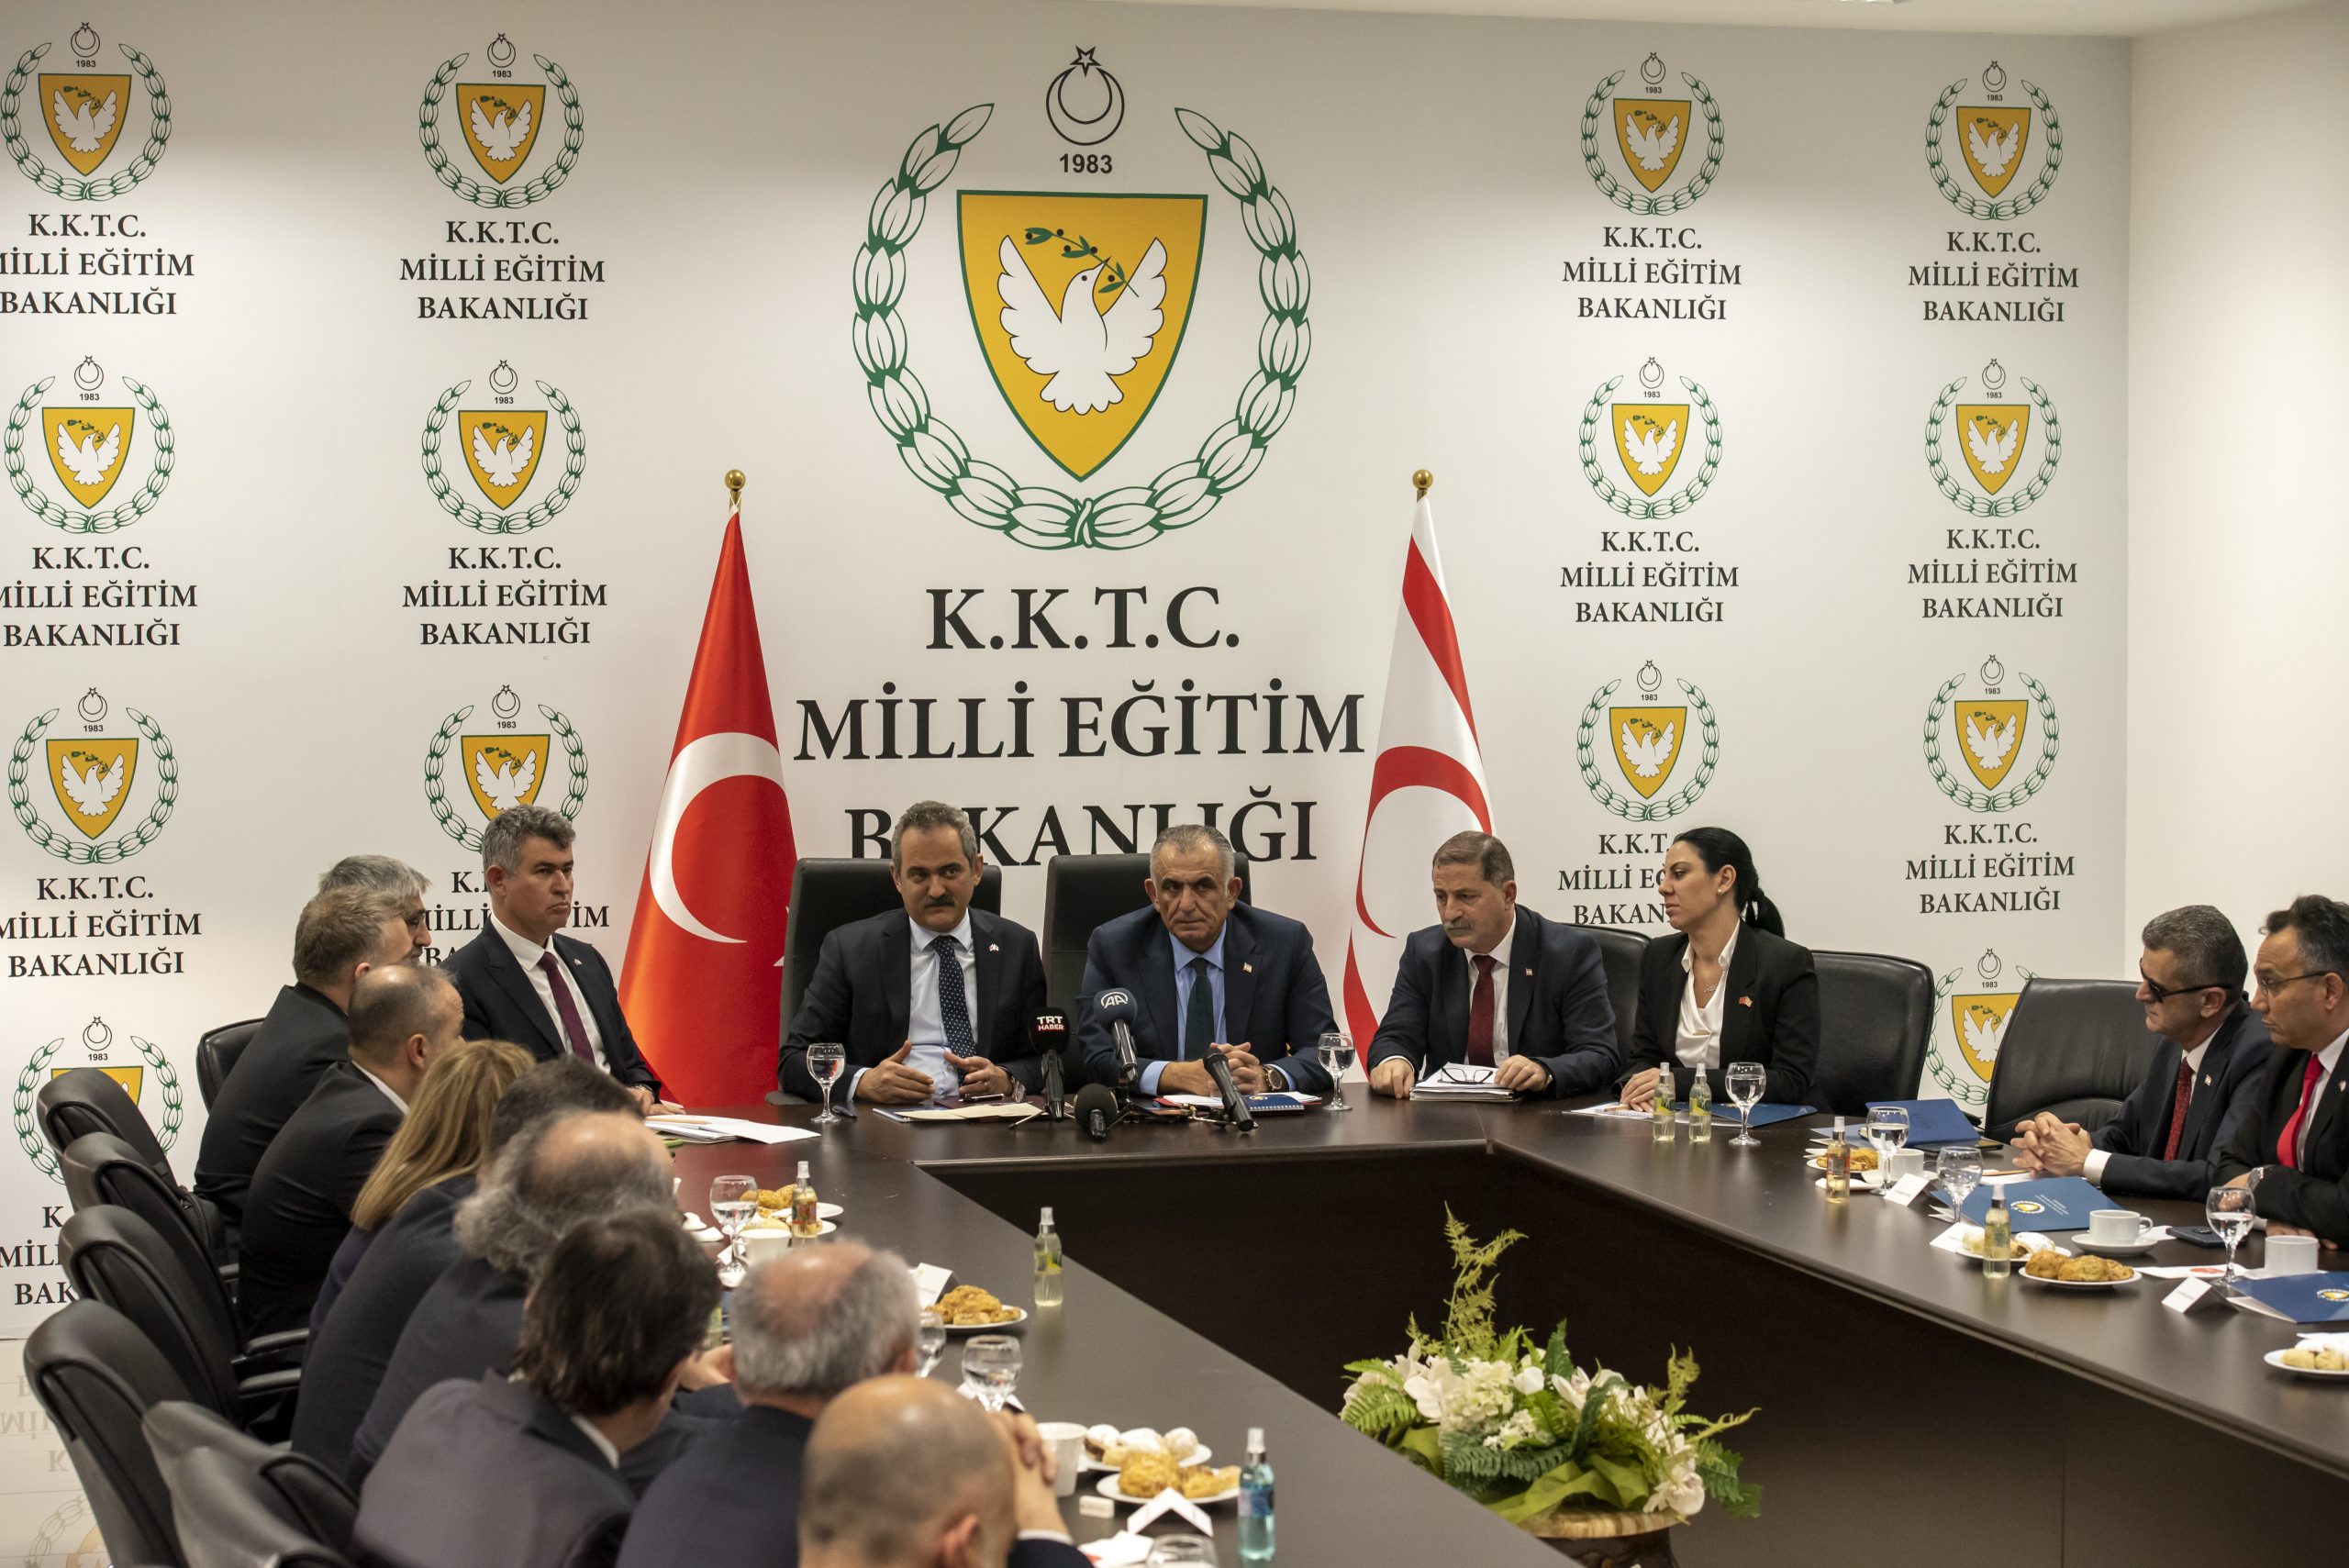 Milli Eğitim Bakanı Çavuşoğlu ve Türkiye Cumhuriyeti Milli Eğitim Bakanı Özer basına açıklama yaptı